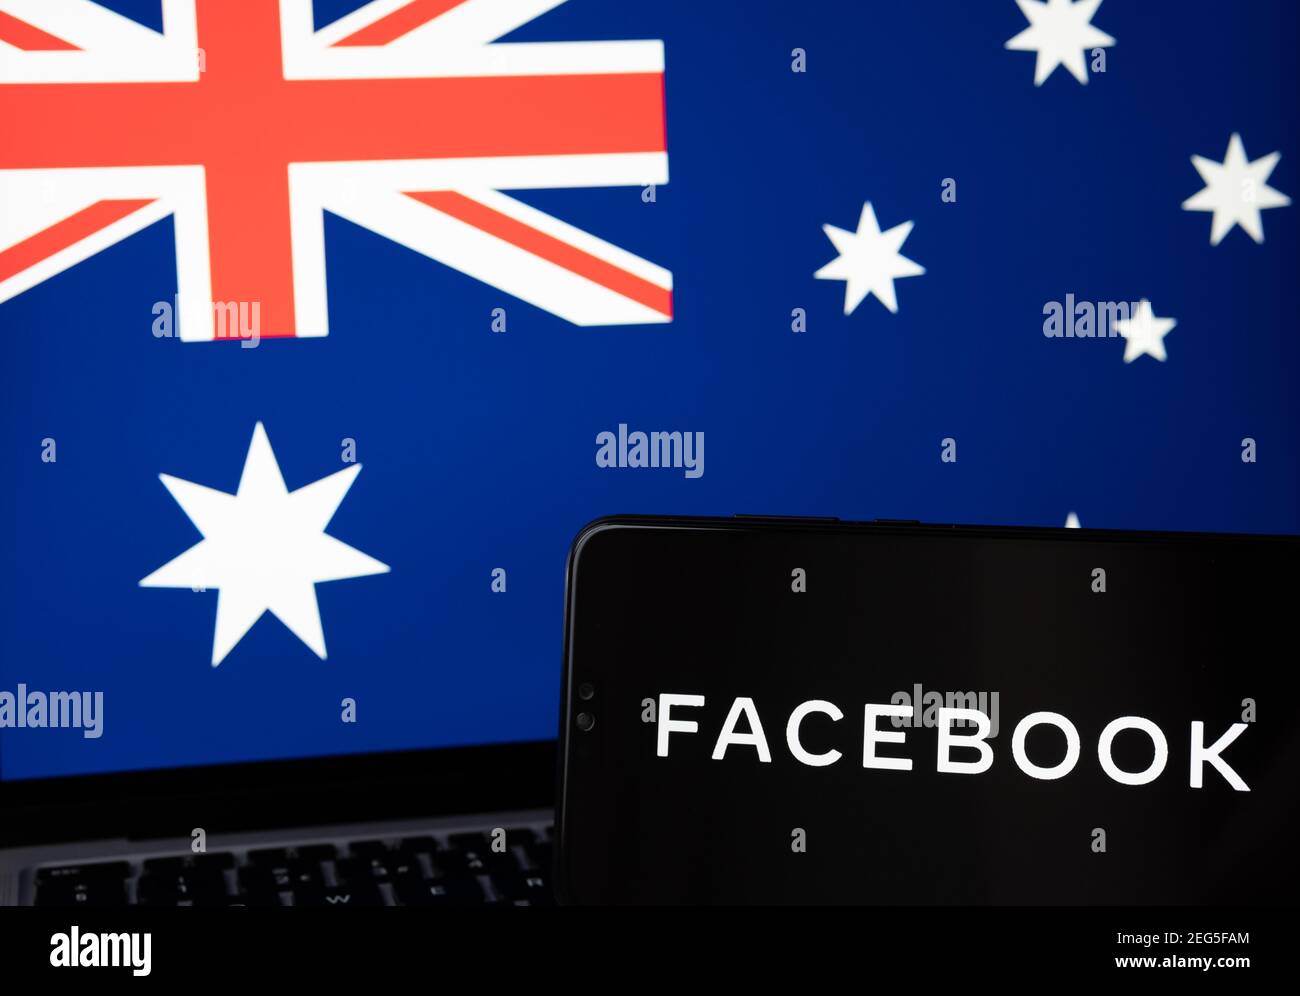 Logo Facebook visible sur le smartphone et drapeau australien flou sur l'écran d'arrière-plan. Concept. Stafford, Royaume-Uni, 18 février 2021. Banque D'Images